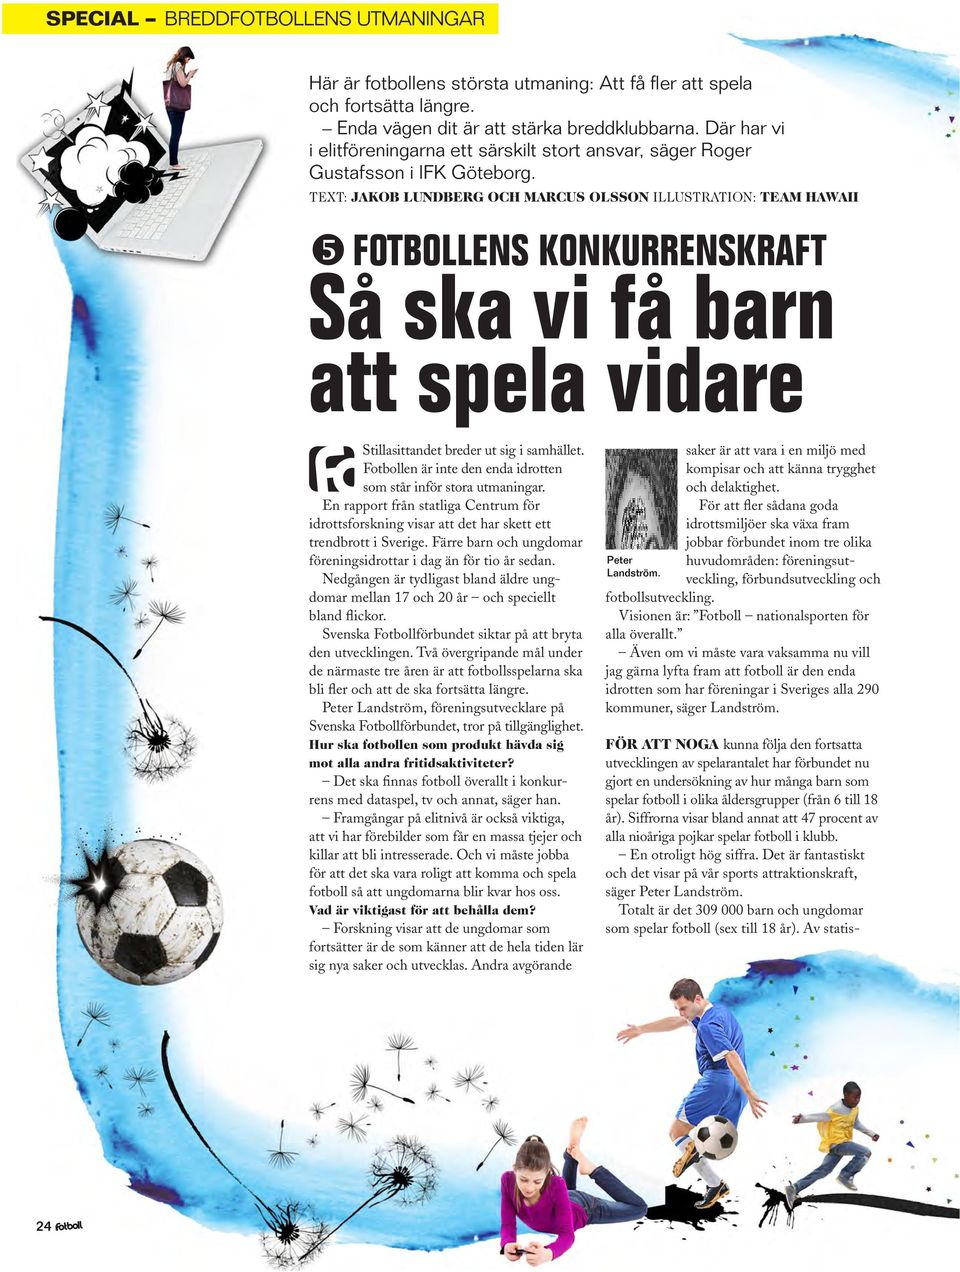 TEXT: Jakob Lundberg och Marcus Olsson illustration: team hawaii y FOTbollens konkurrenskraft Så ska vi få barn att spela vidare Stillasittandet breder ut sig i samhället.